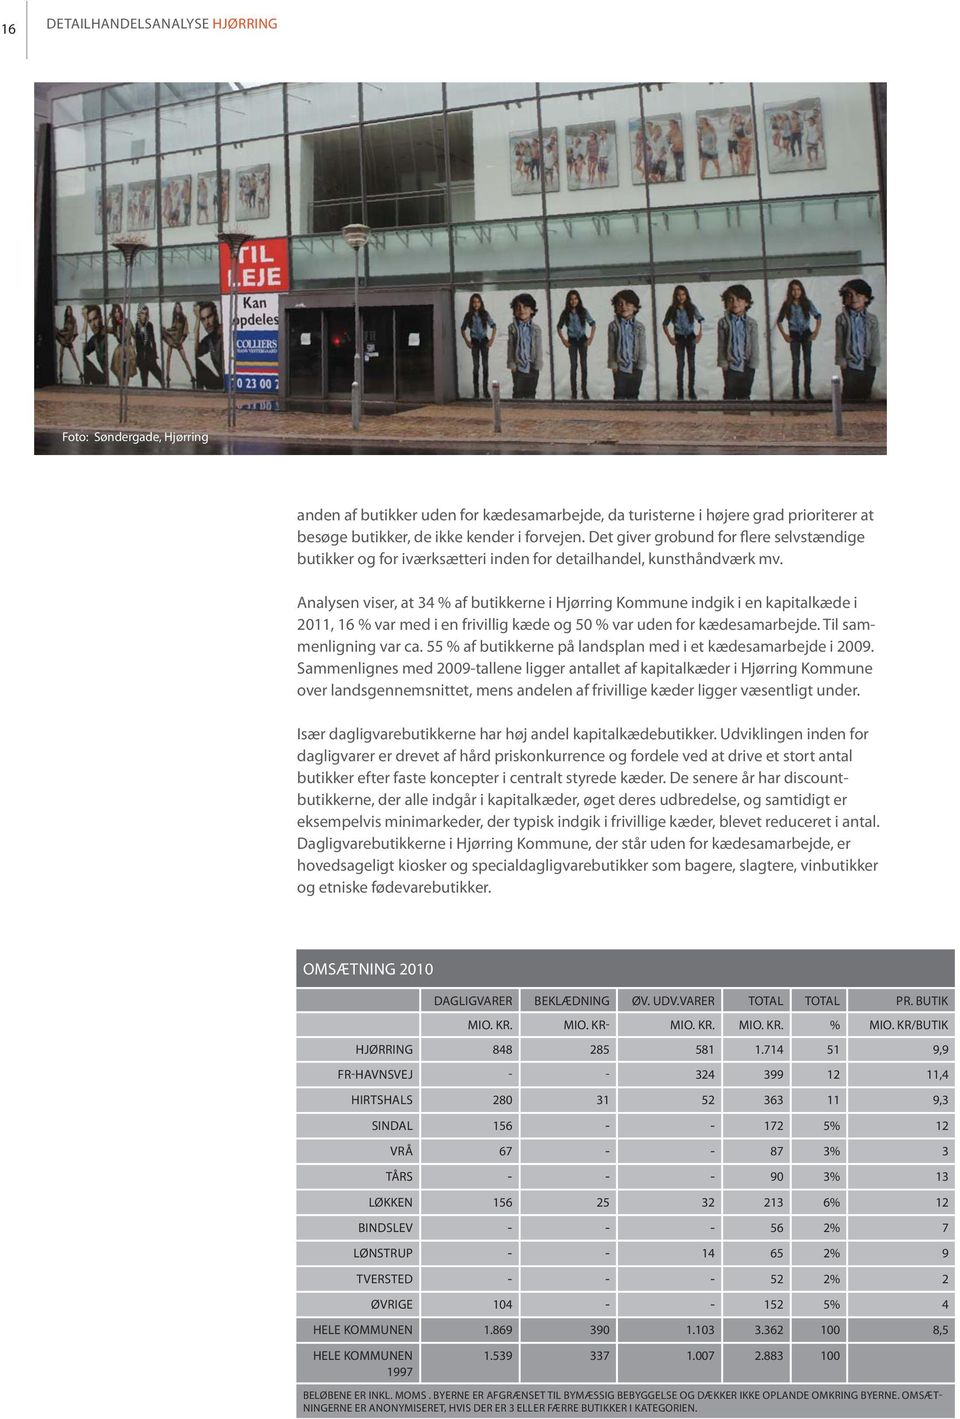 Analysen viser, at 34 % af butikkerne i Hjørring Kommune indgik i en kapitalkæde i 2011, 16 % var med i en frivillig kæde og 50 % var uden for kædesamarbejde. Til sammenligning var ca.